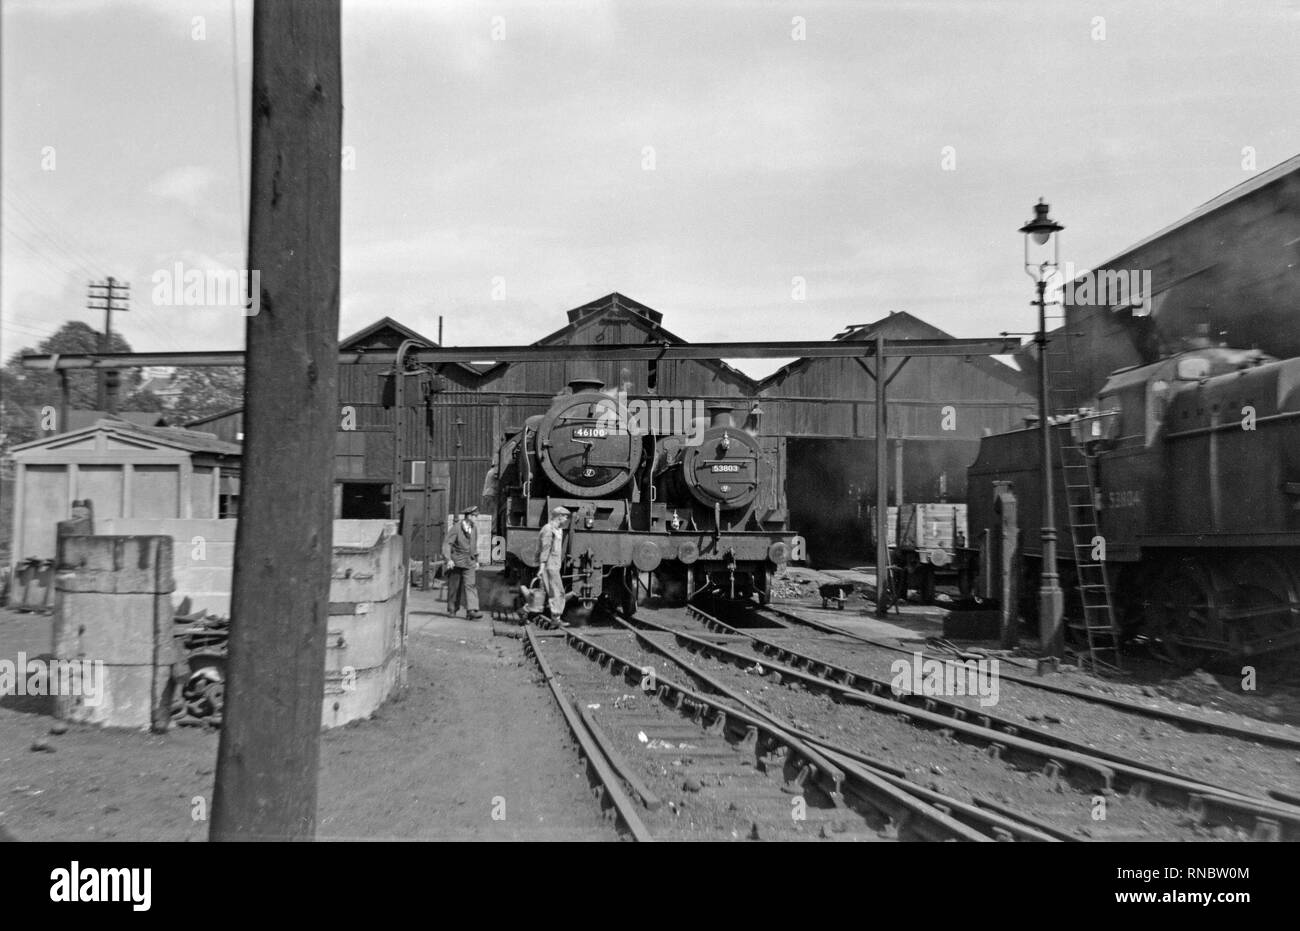 Drei Dampflokomotiven im Zug Yard in England während der 50er Jahre. Auf der linken Seite ist die 46100 Royal Scot, die jetzt in England erhalten. Die anderen zwei Lokomotiven, 53803 und 53804 sind Fowler 2-8-0-Motoren. Stockfoto